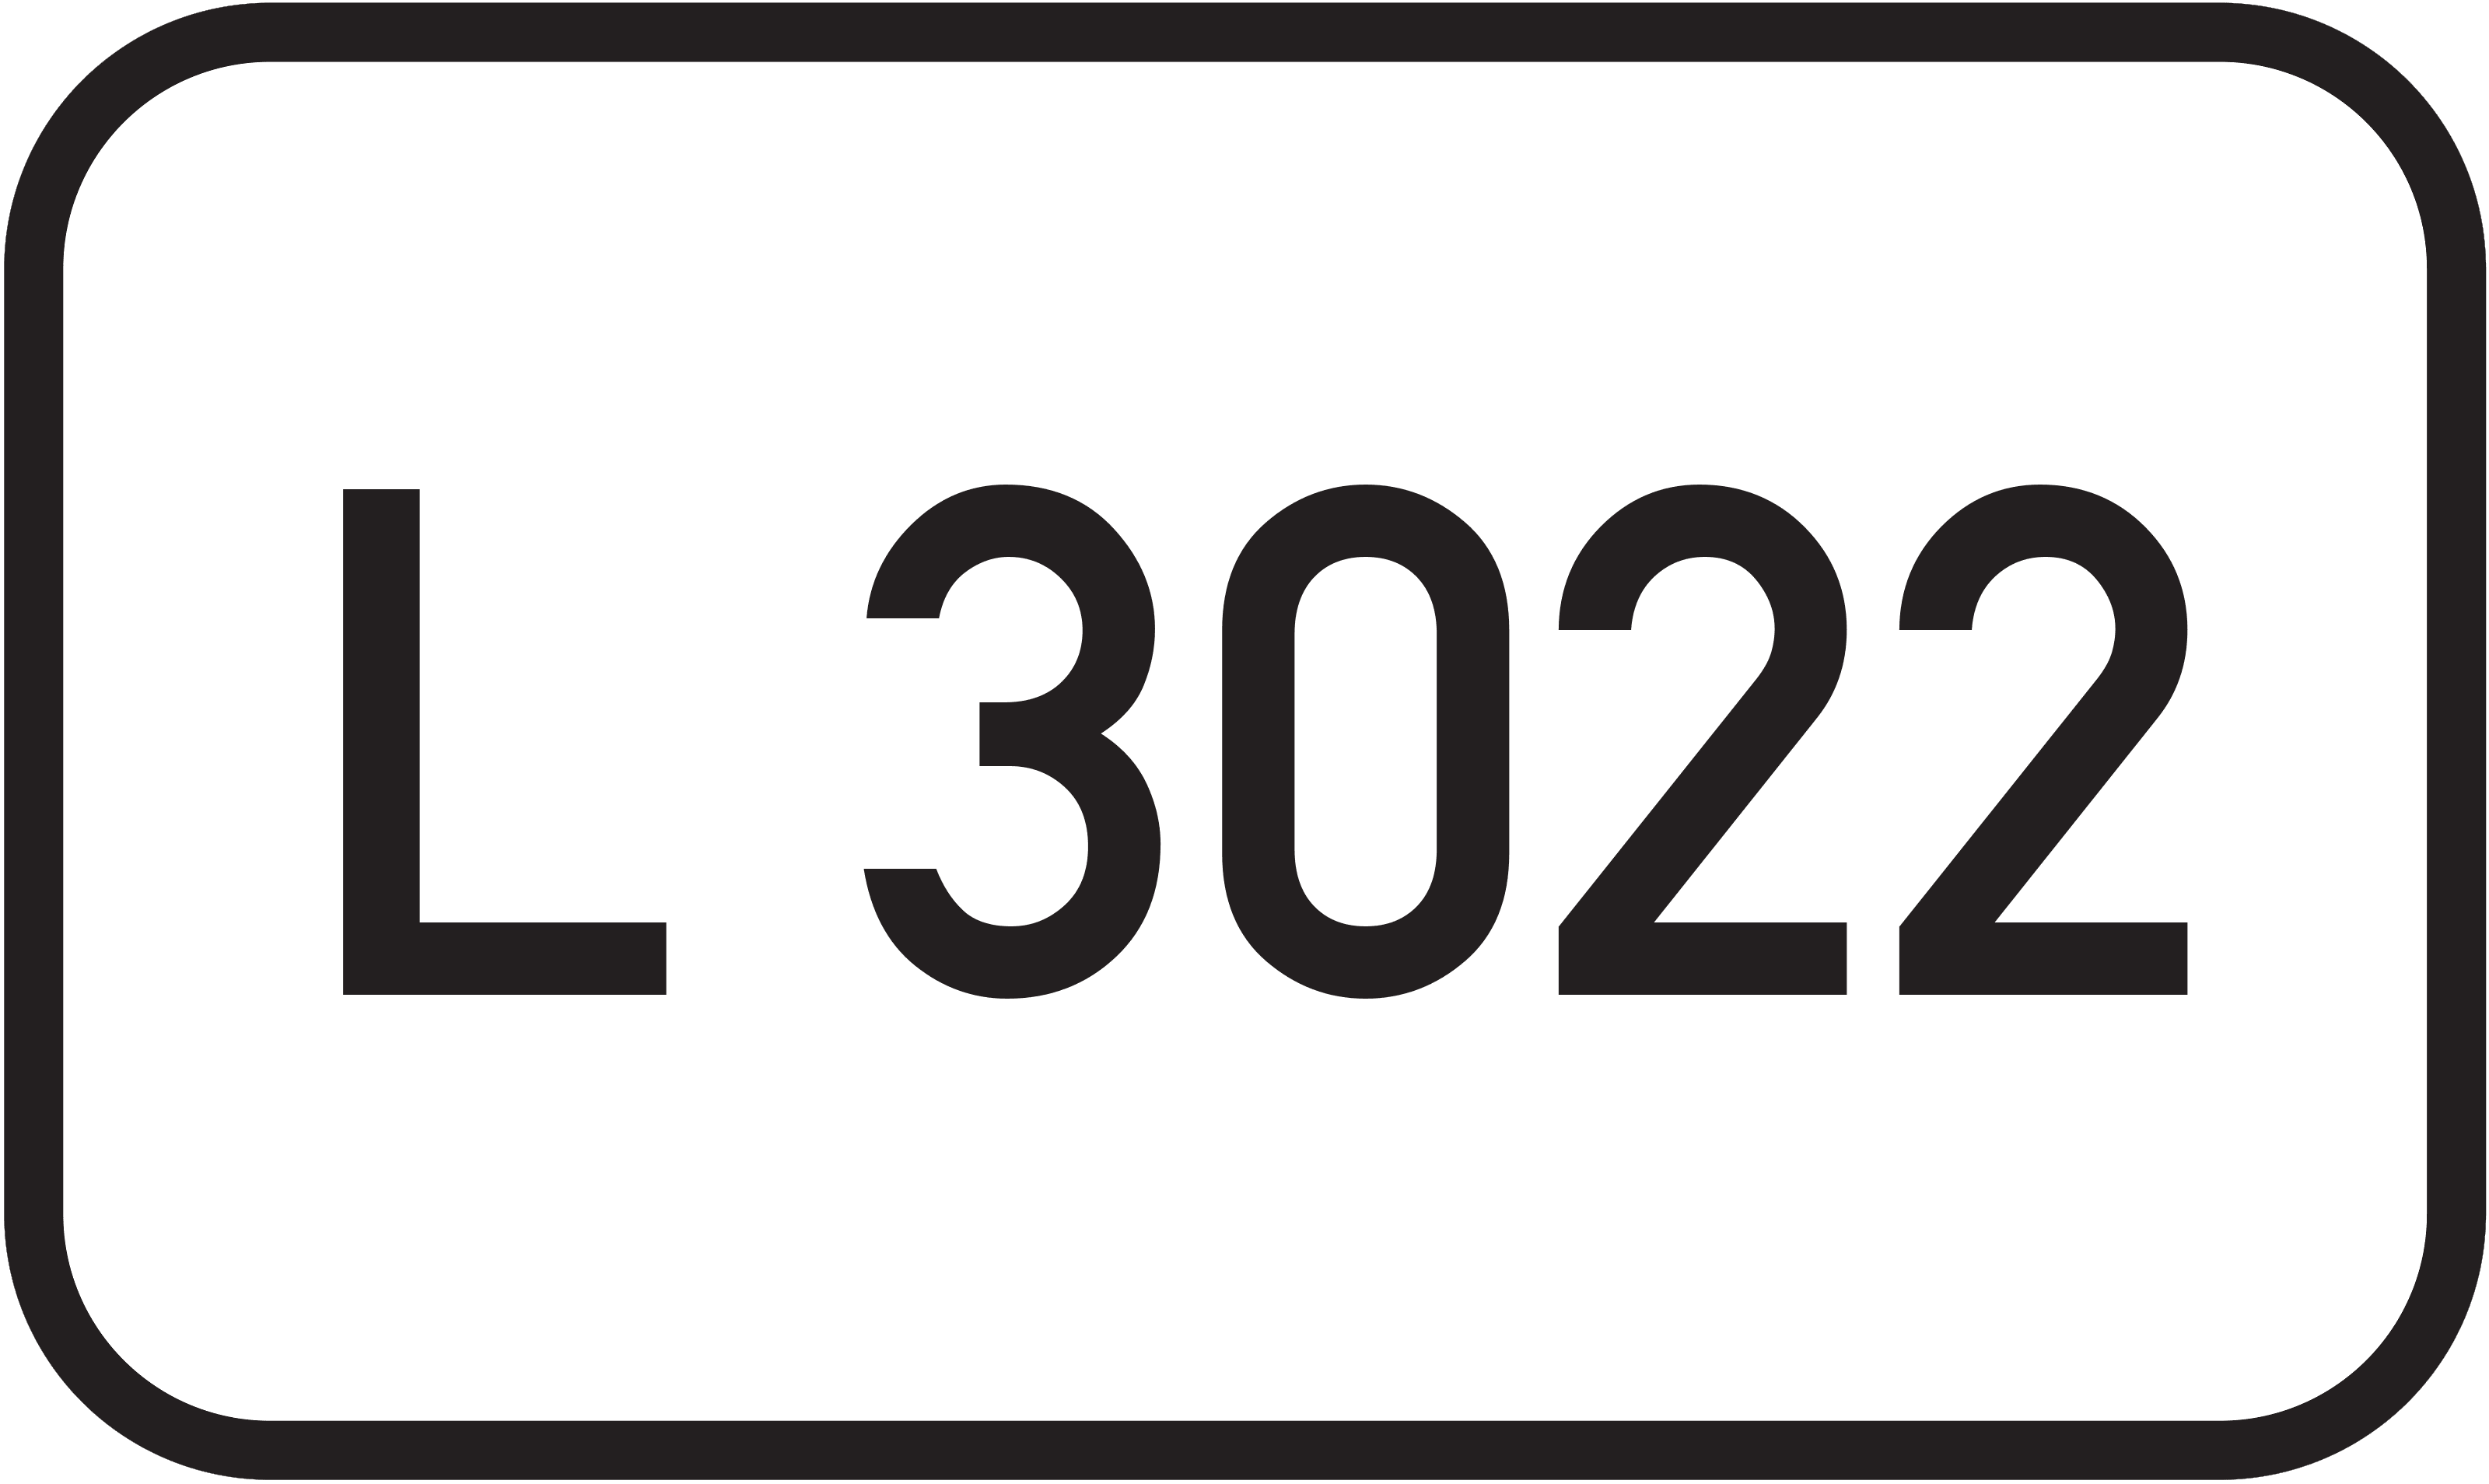 Landesstraße L 3022